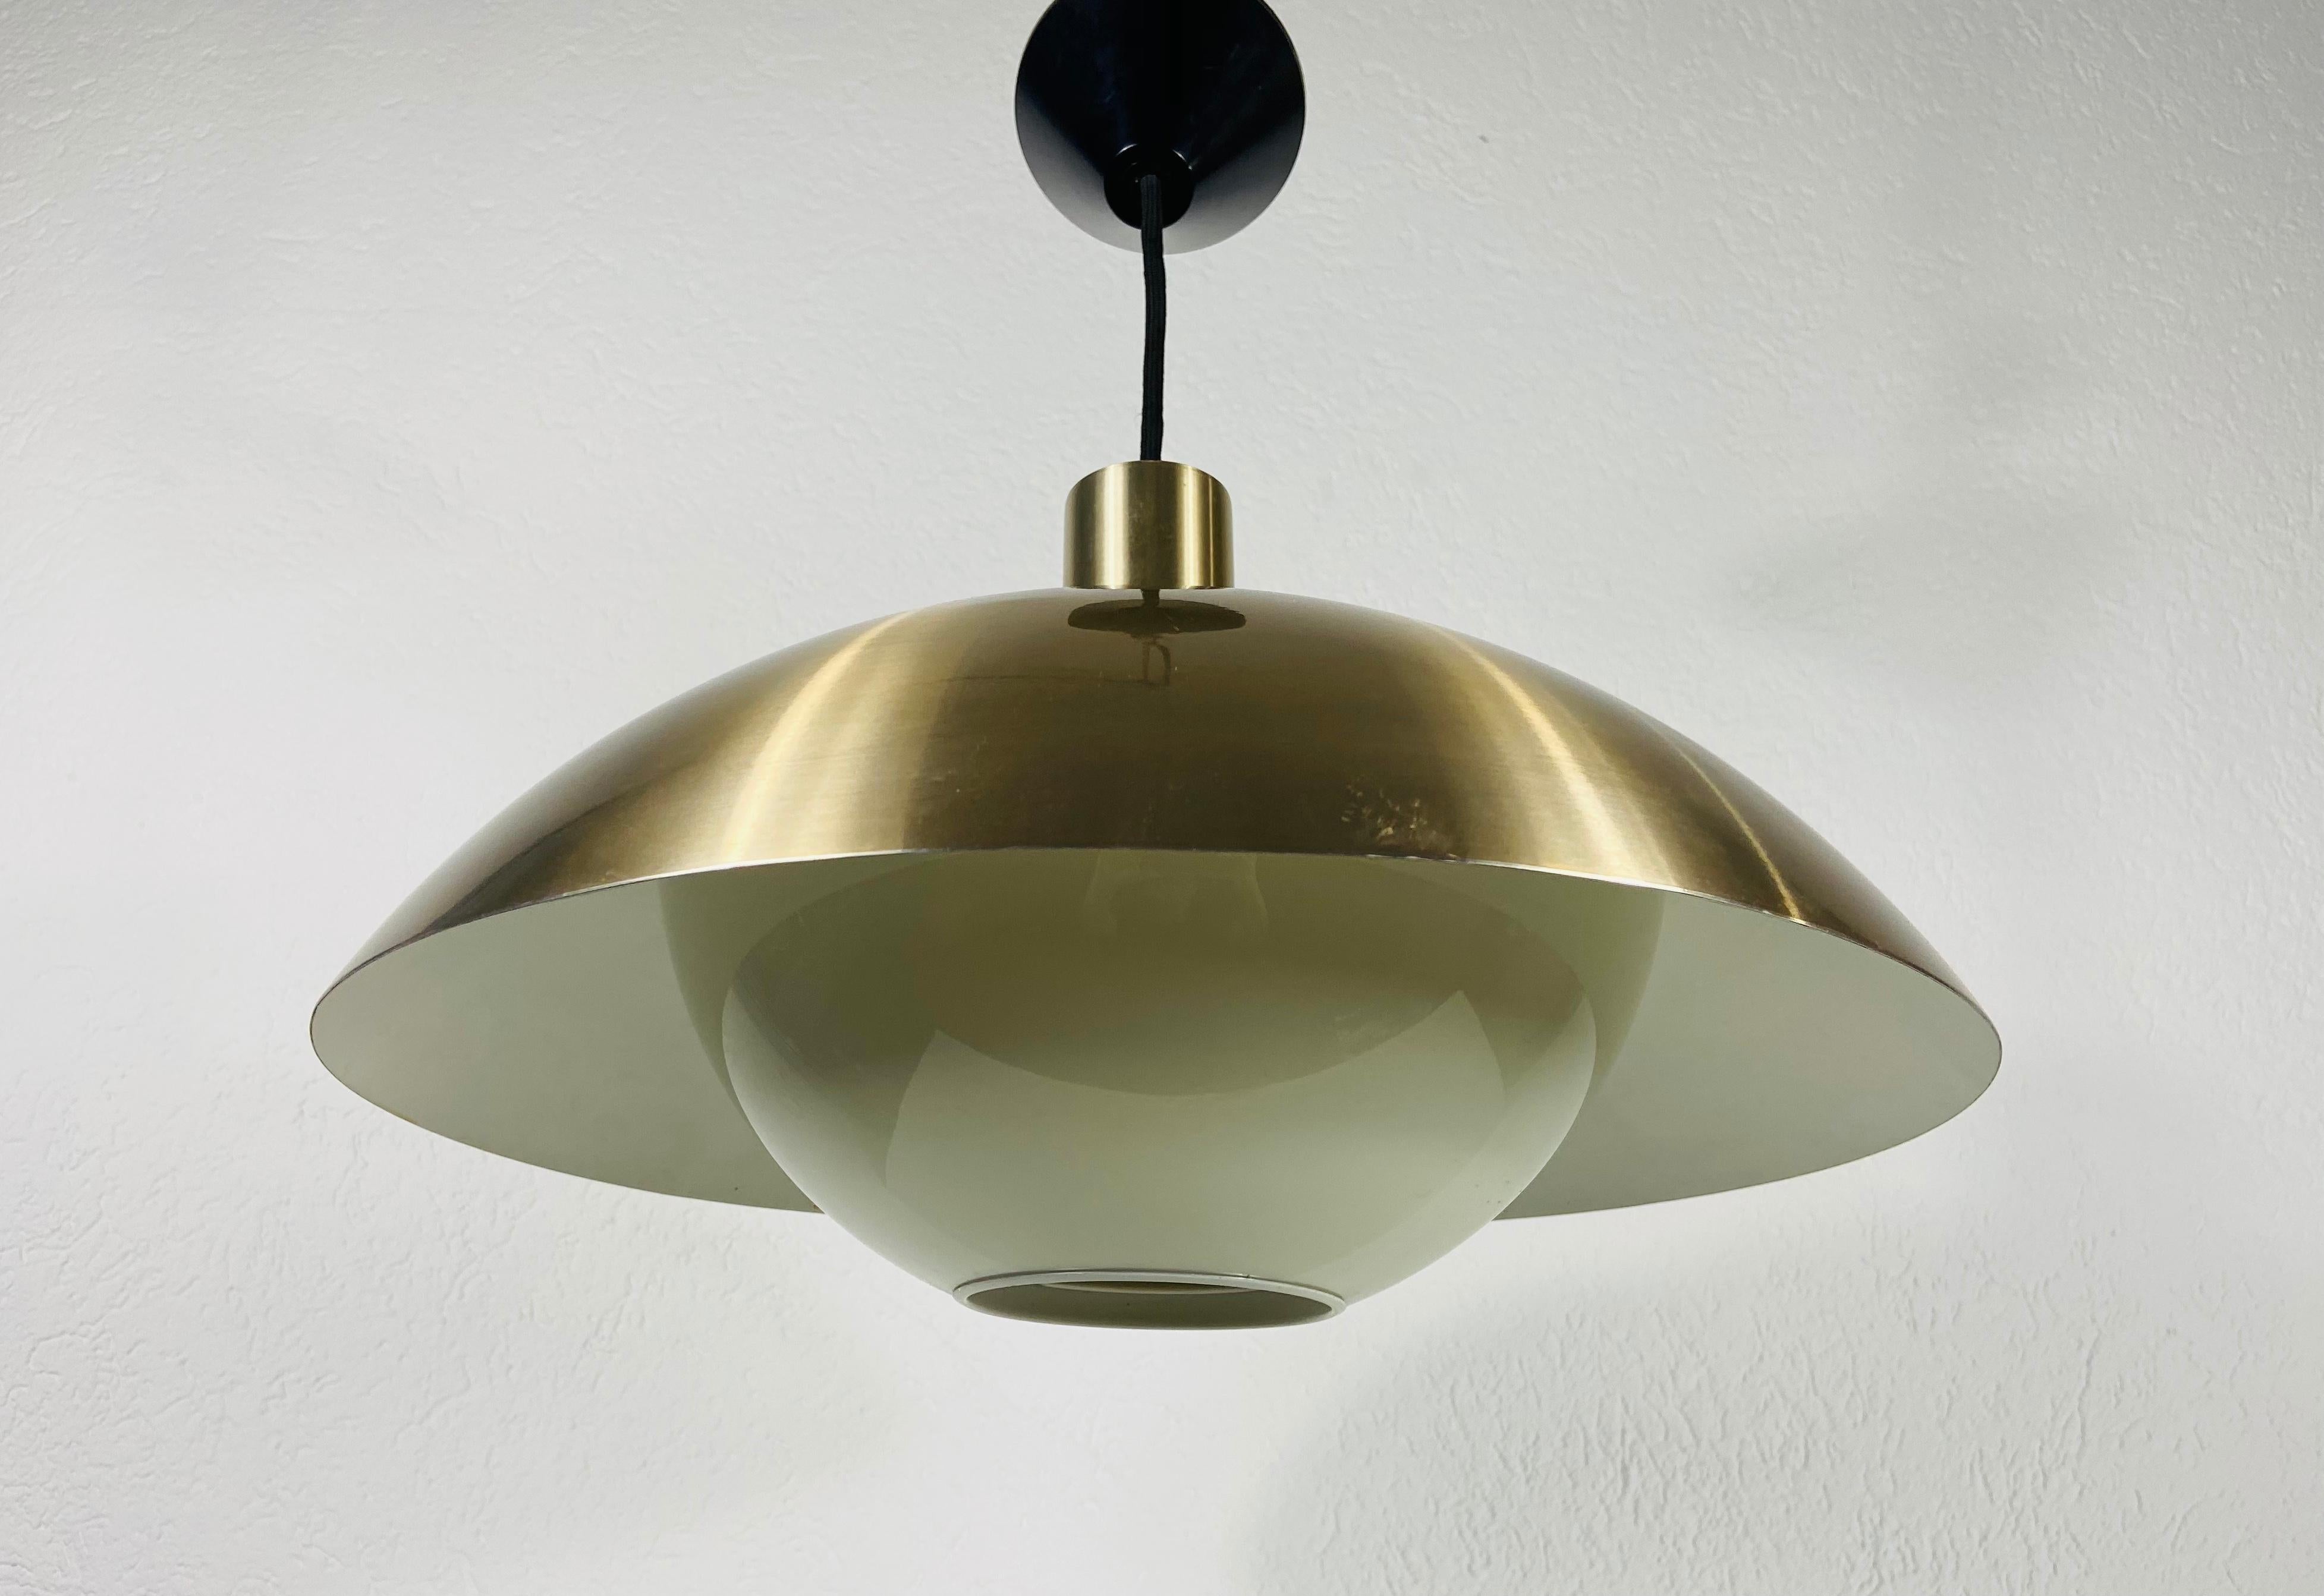 Lampe pendante danoise en plastique fabriquée au Danemark dans les années 1960. Le luminaire donne une très belle lumière. Il est fait d'aluminium et de plastique fin.

La lampe nécessite une ampoule E27 (US E26). Fonctionne avec les deux